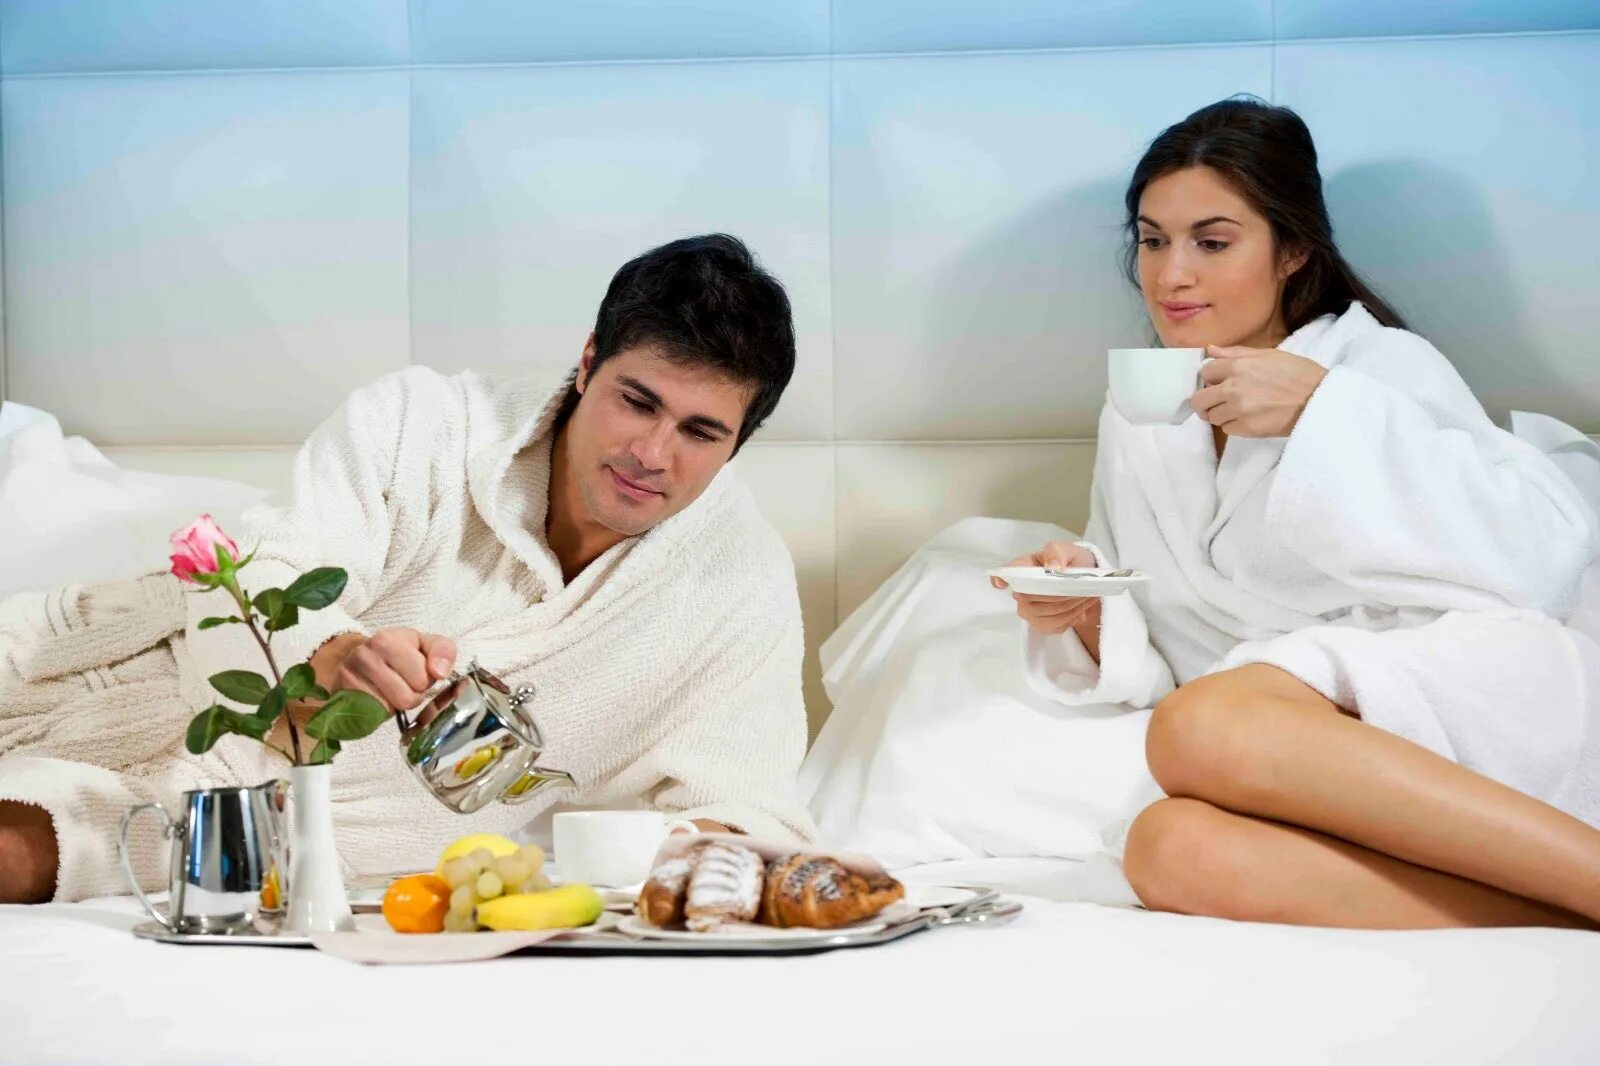 Ухаживать за ней и даже. Романтическое утро. Завтрак в постель парню. Чай в постель девушке. Парень приносит завтрак в постель девушке.